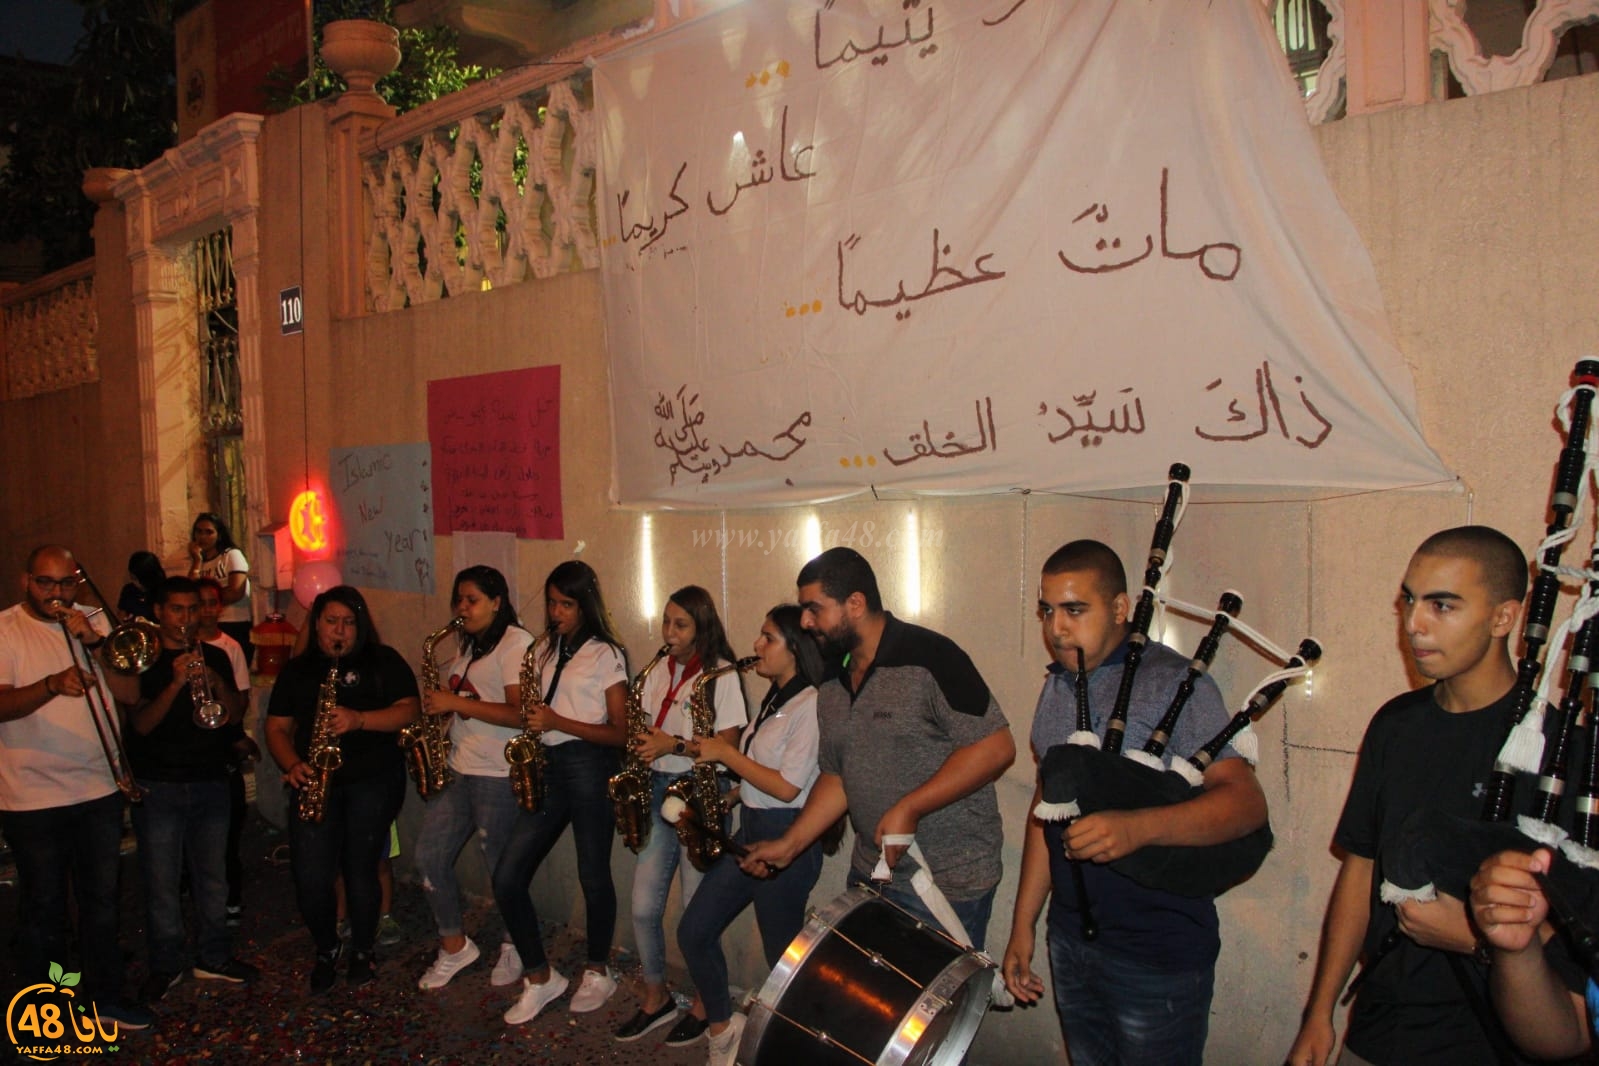  بالصور: سرية كشاف النادي الاسلامي تحتفل برأس السنة الهجريّة